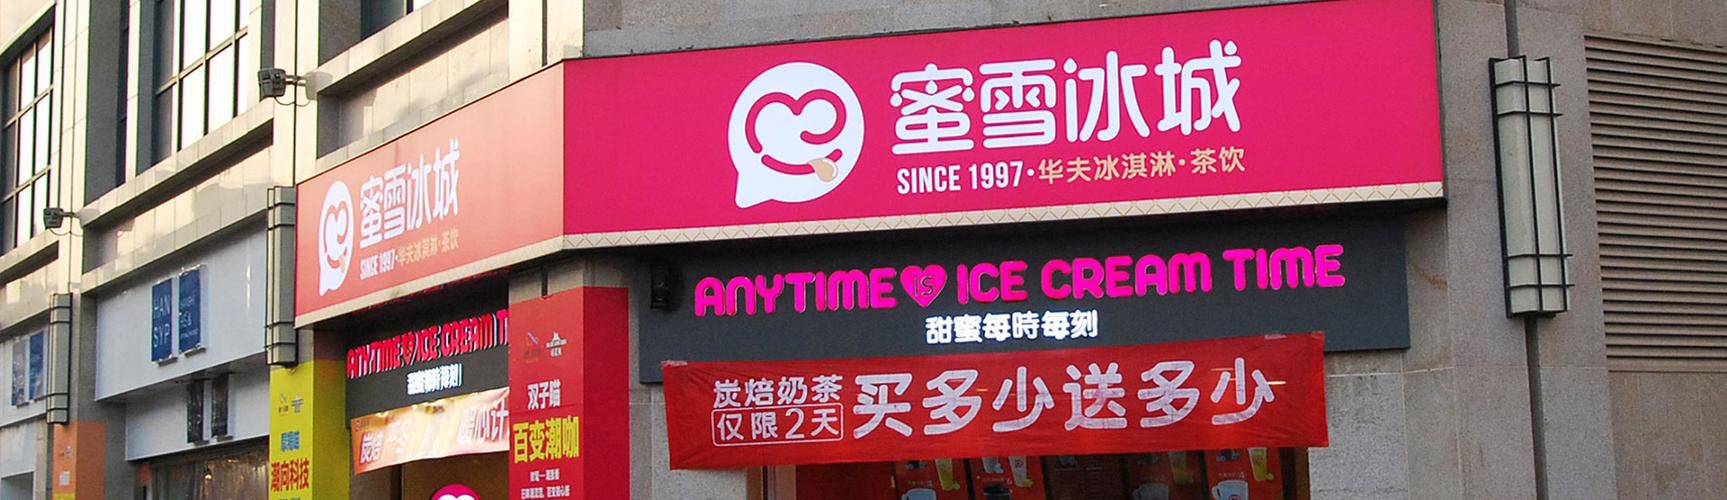 哪里有免费的蜜雪冰城加盟店，惠州市有多少家蜜雪冰城加盟店